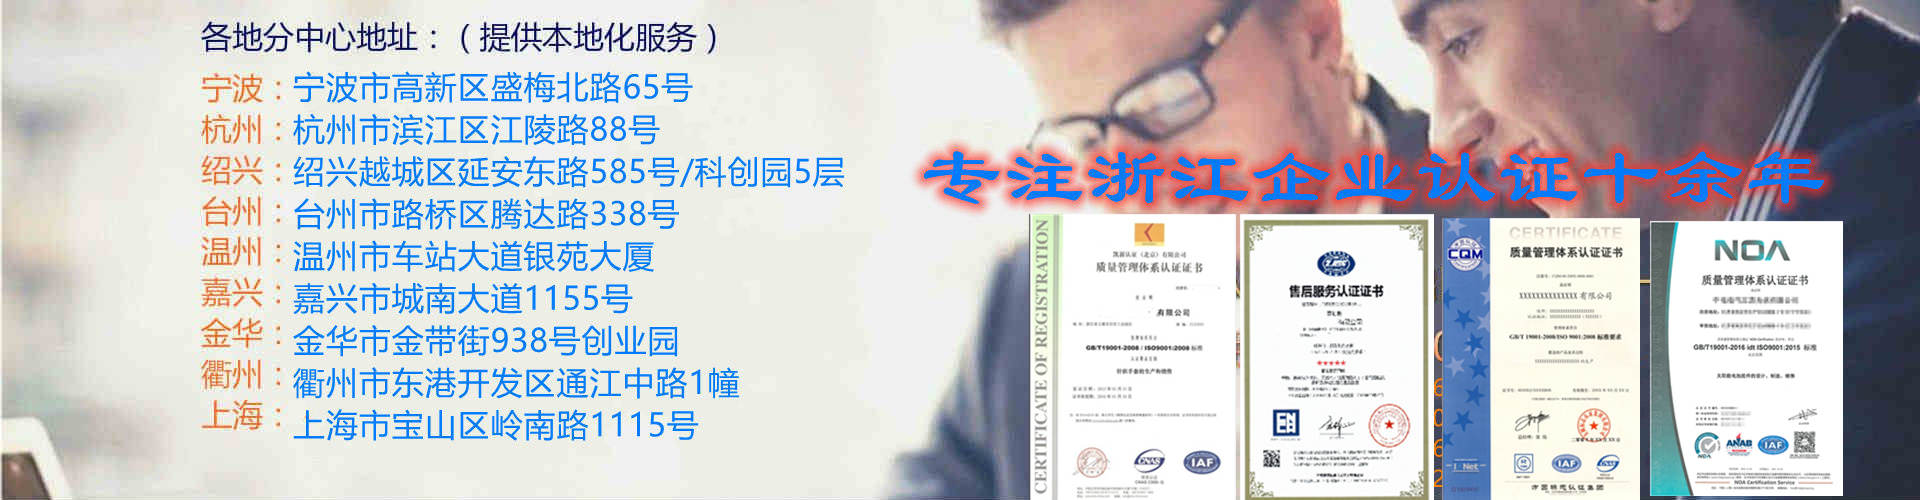 宁波ISO9001认证初审